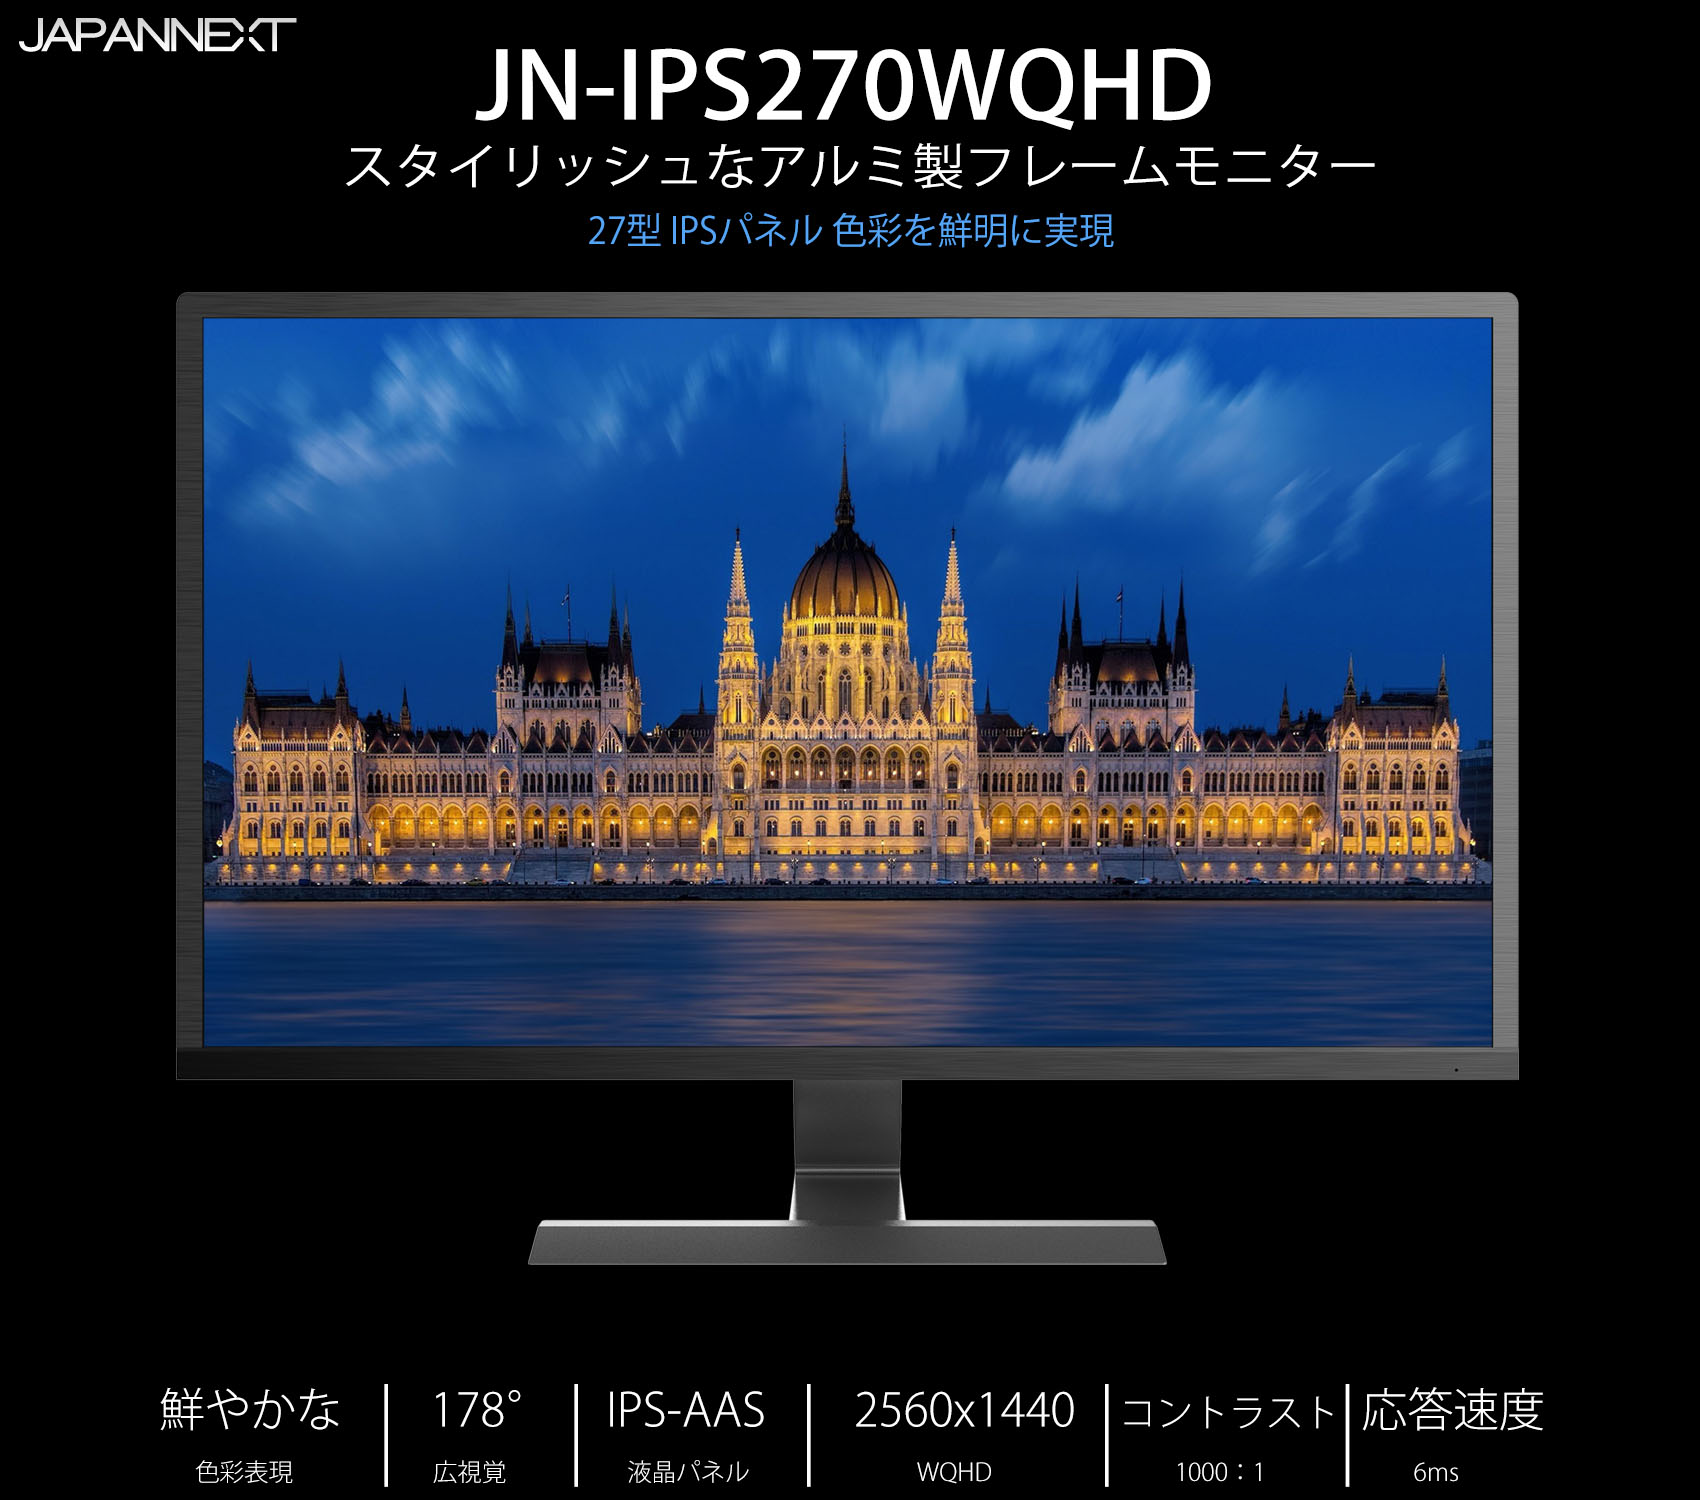 生産終了〉WQHD 27型 IPS液晶モニター JAPANNEXT JN-IPS2700WQHD 60Hz 2560×1440 – JAPANNEXT  4K WQHDなど超解像度、ゲーミング、曲面など特殊液晶モニター